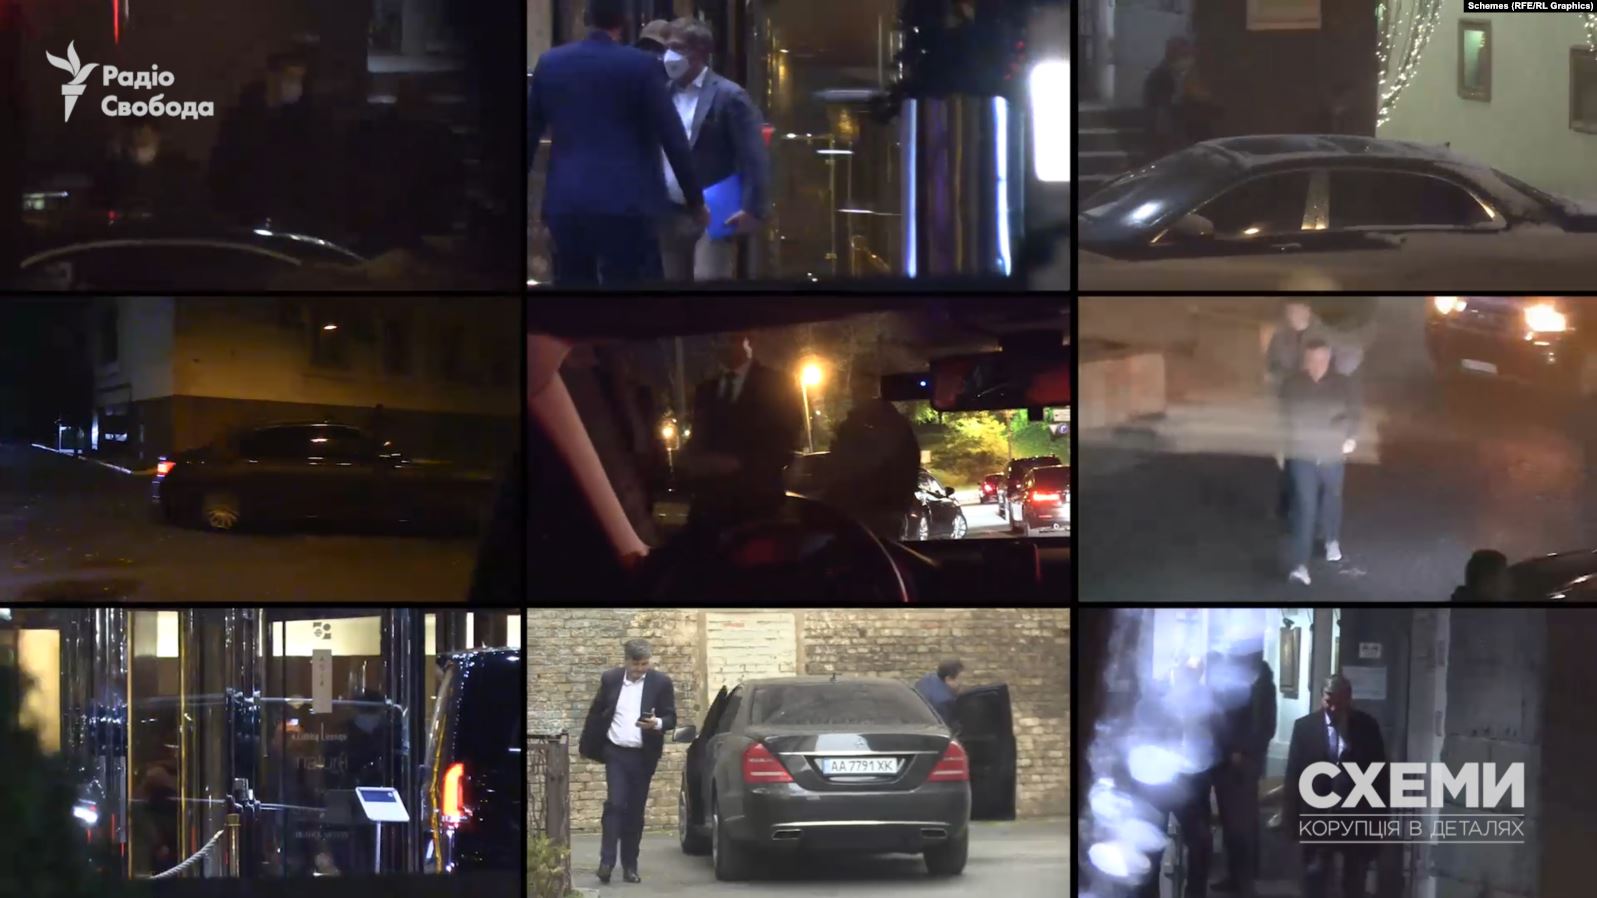 Переговоры в ночном Киеве — в сети опубликовали видео тайных встреч олигархов и топ-чиновников